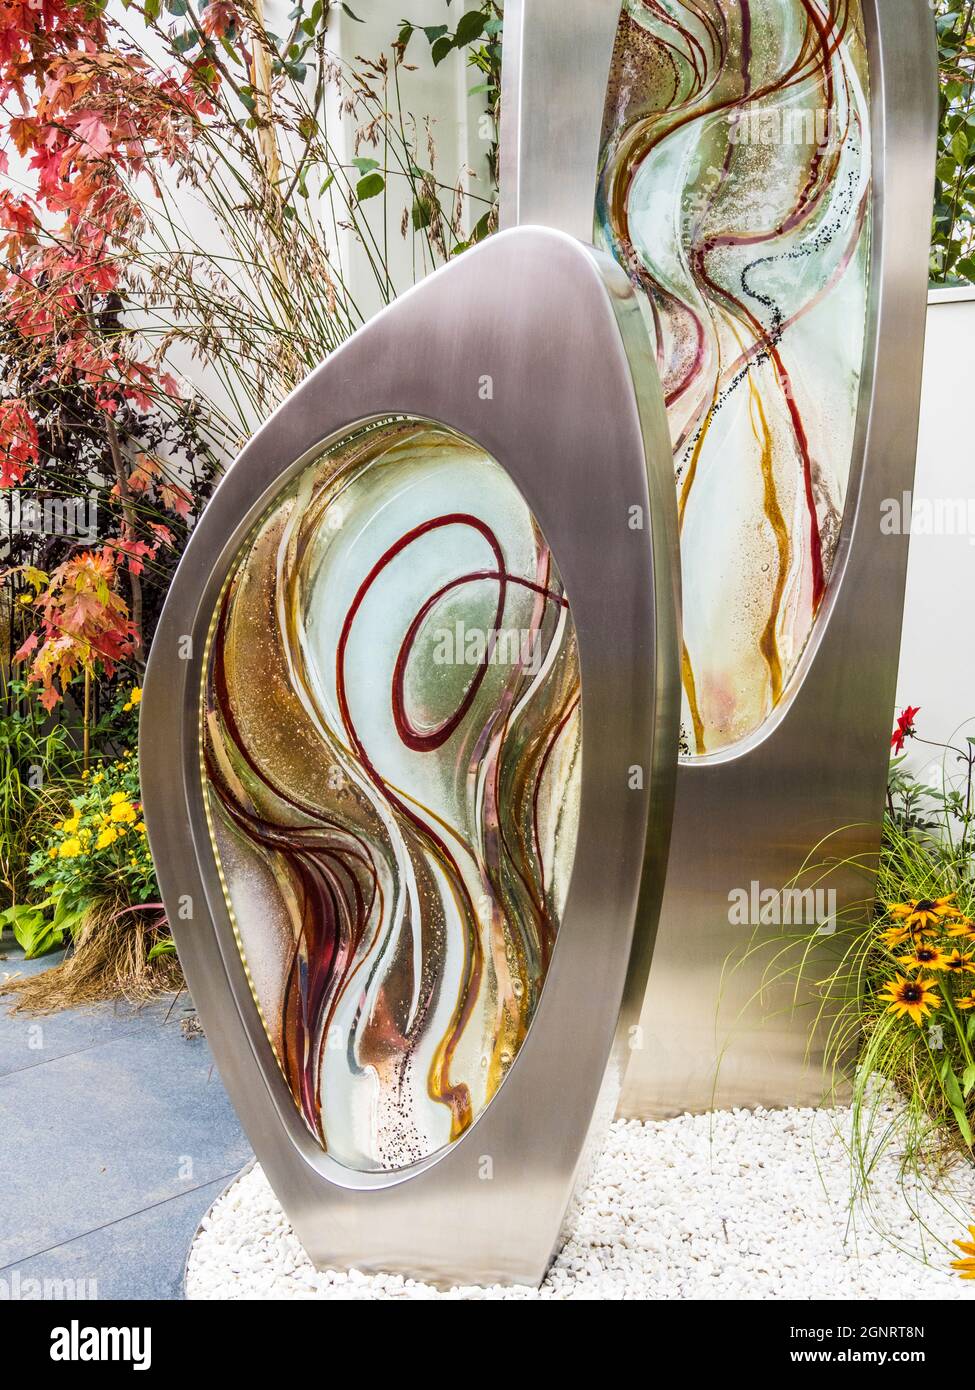 Des œuvres d'art contemporaines en jardin de verre sont exposées au Chelsea Flower Show. Banque D'Images